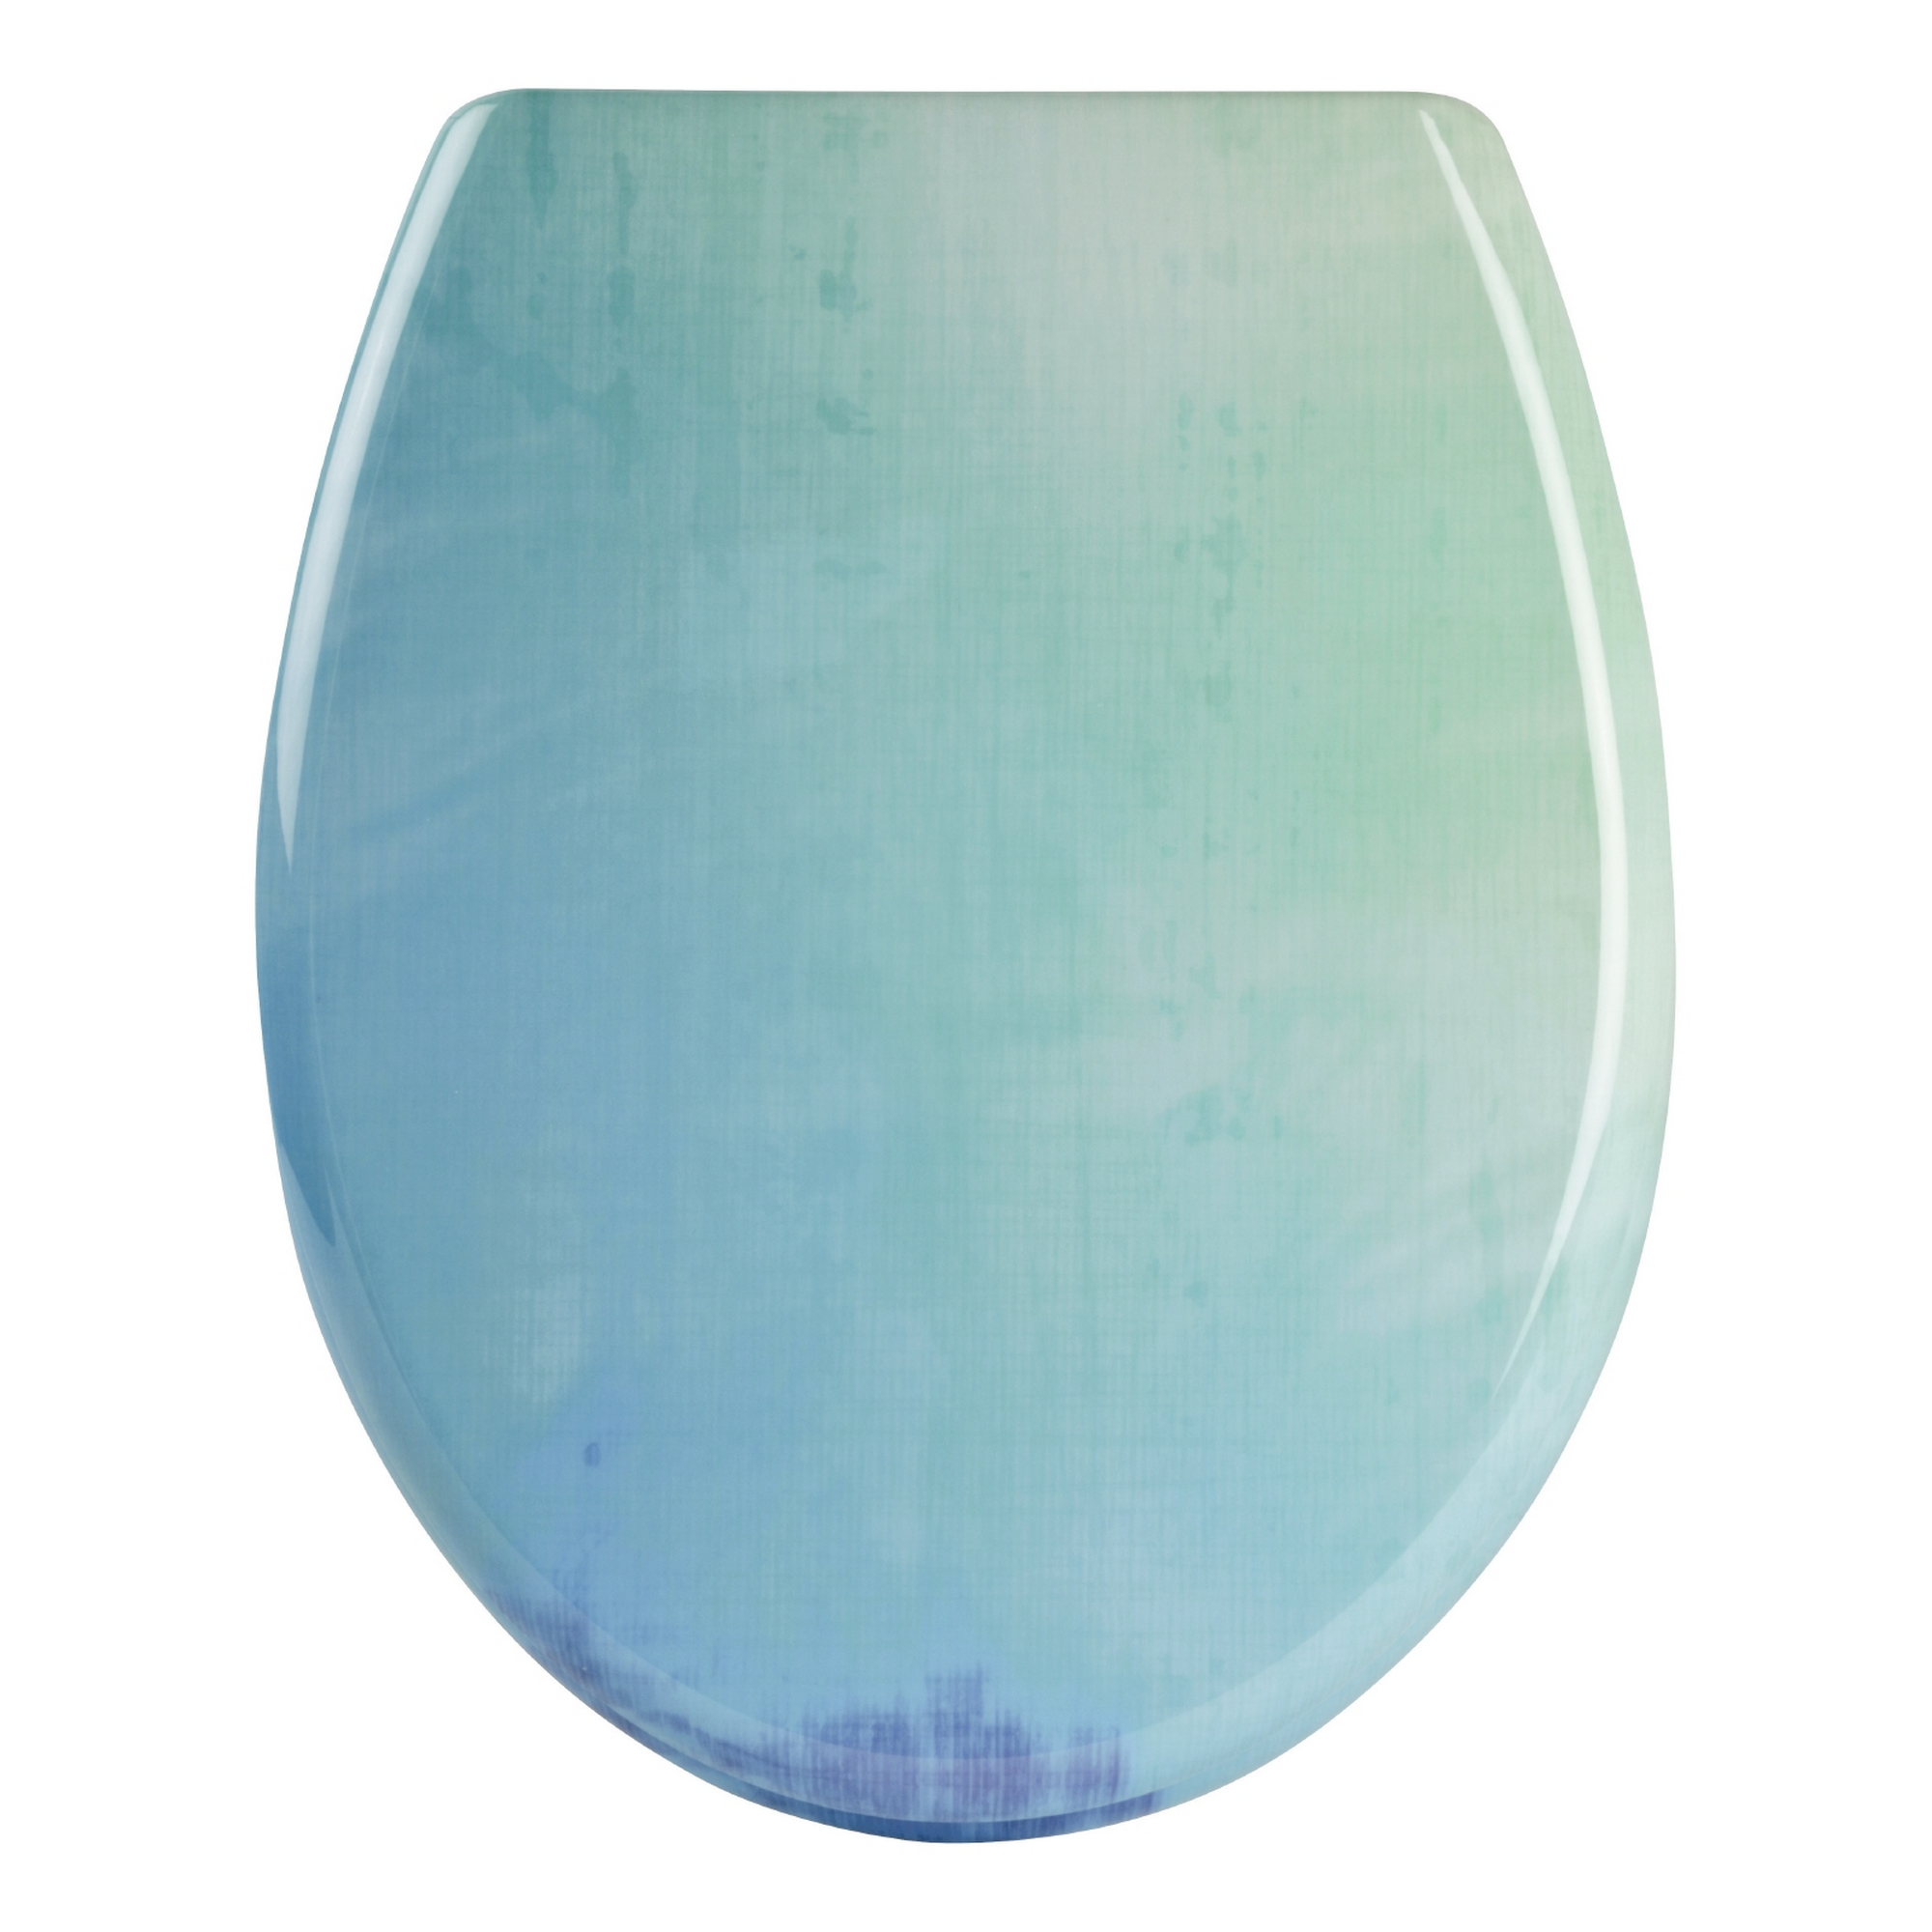 WC-Sitz 'Dekor Farbig' blau Duroplast, mit Absenkautomatik + product picture